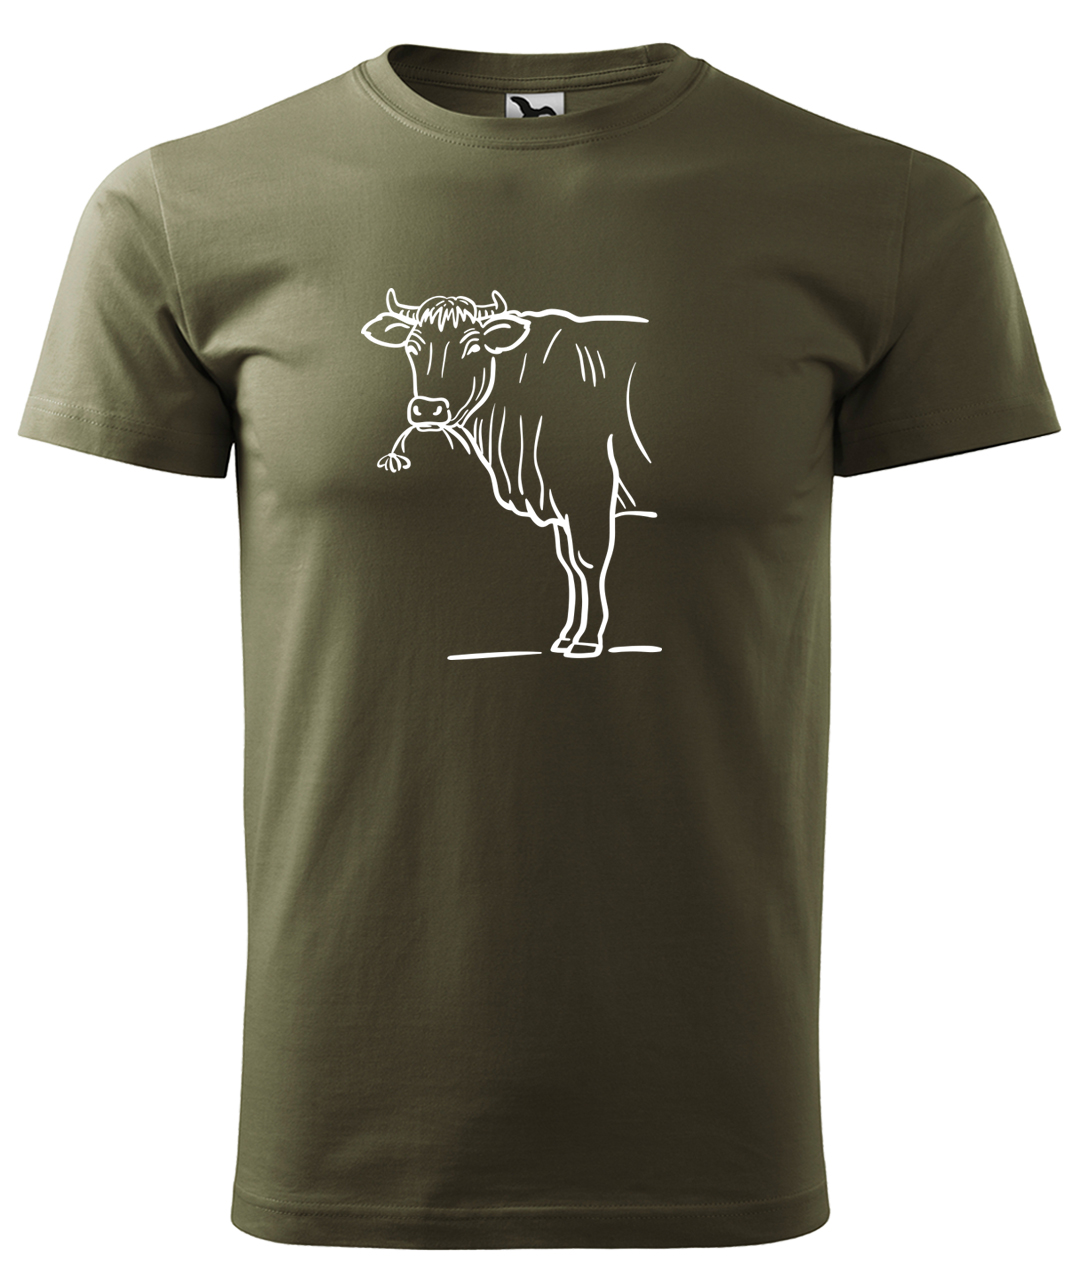 Dětské tričko s krávou - Býk Velikost: 4 roky / 110 cm, Barva: Military (69), Délka rukávu: Krátký rukáv